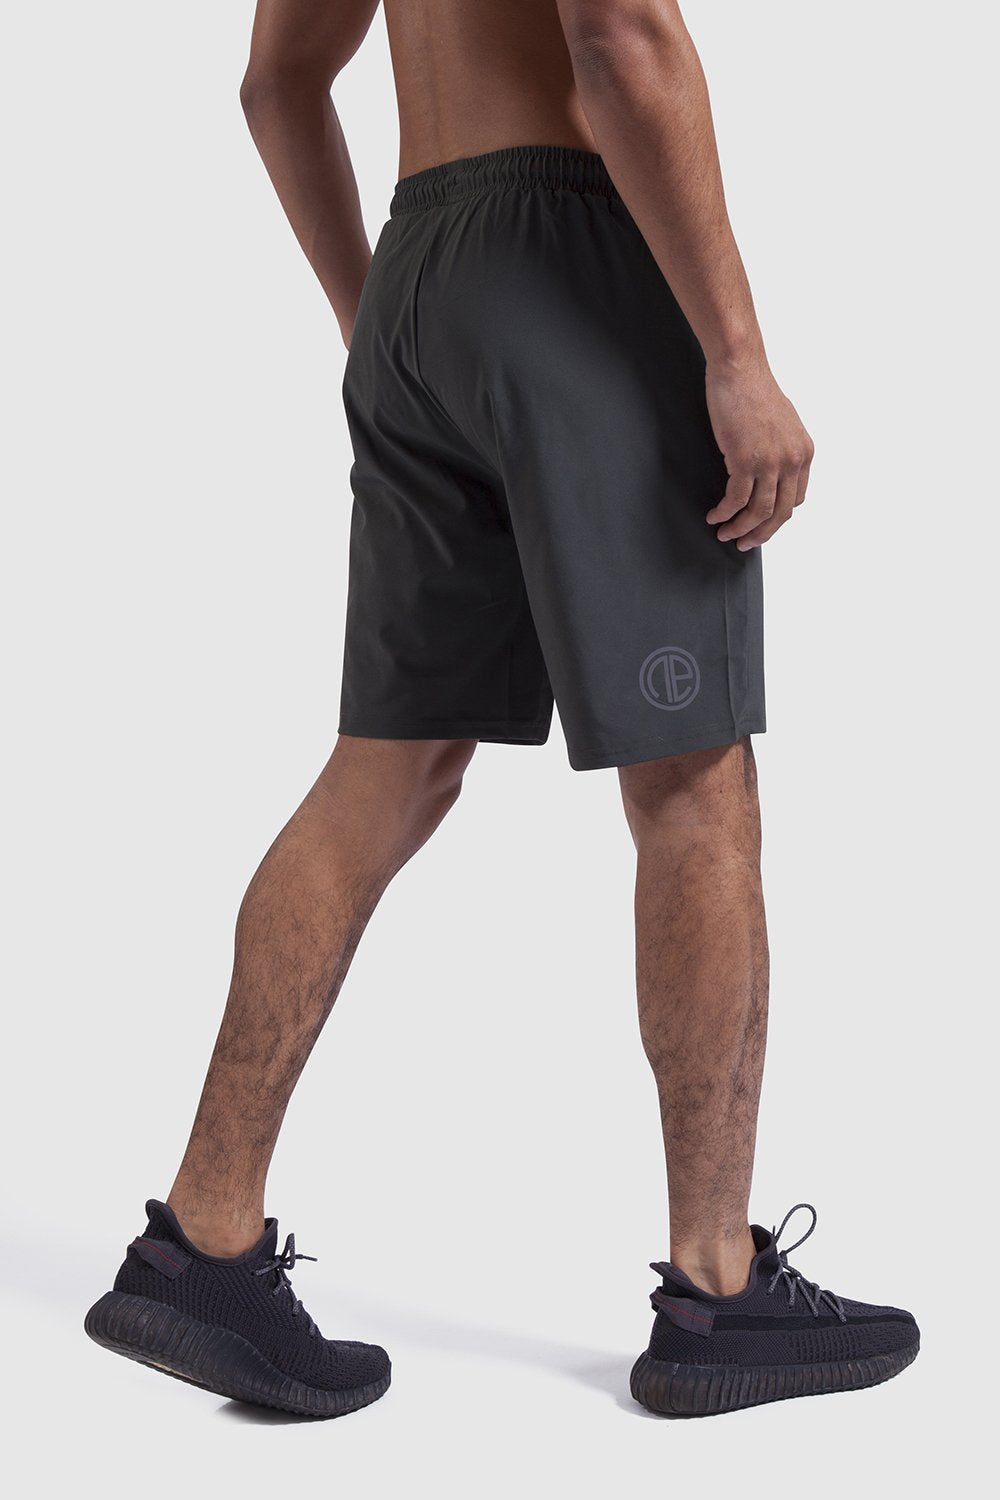 khaki training shorts made by One Athletic